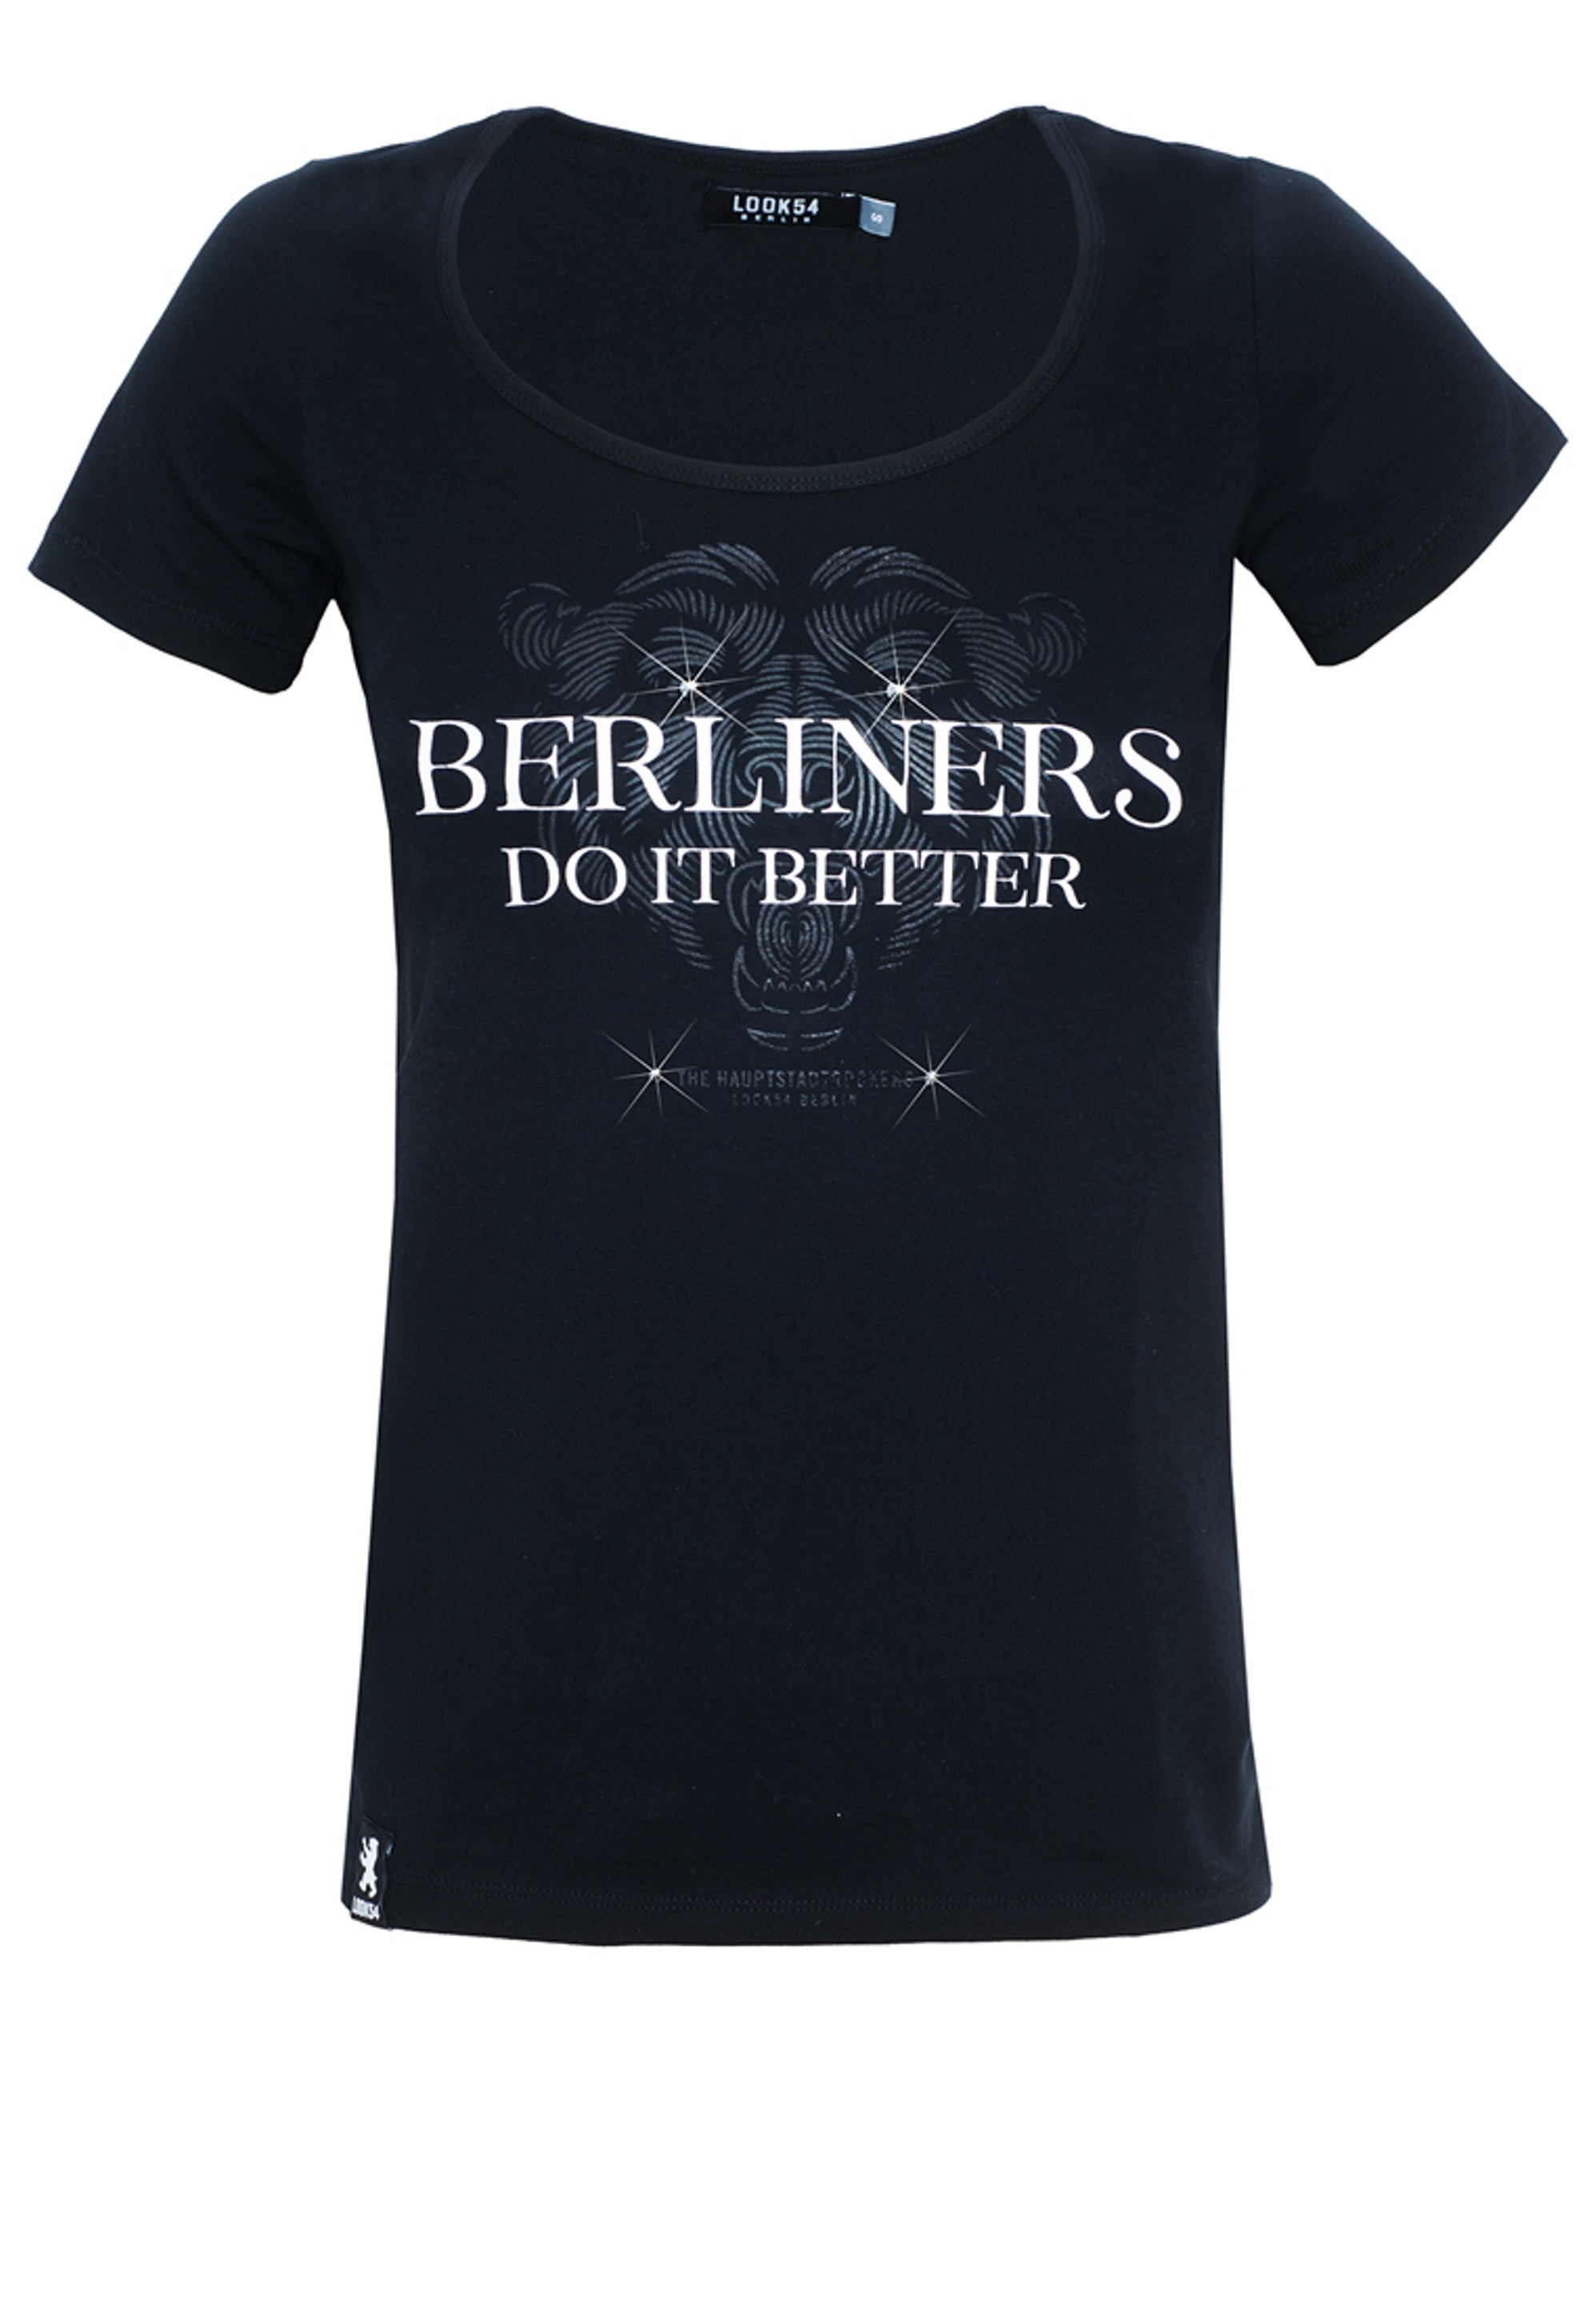 Berliners do it better - Shirt